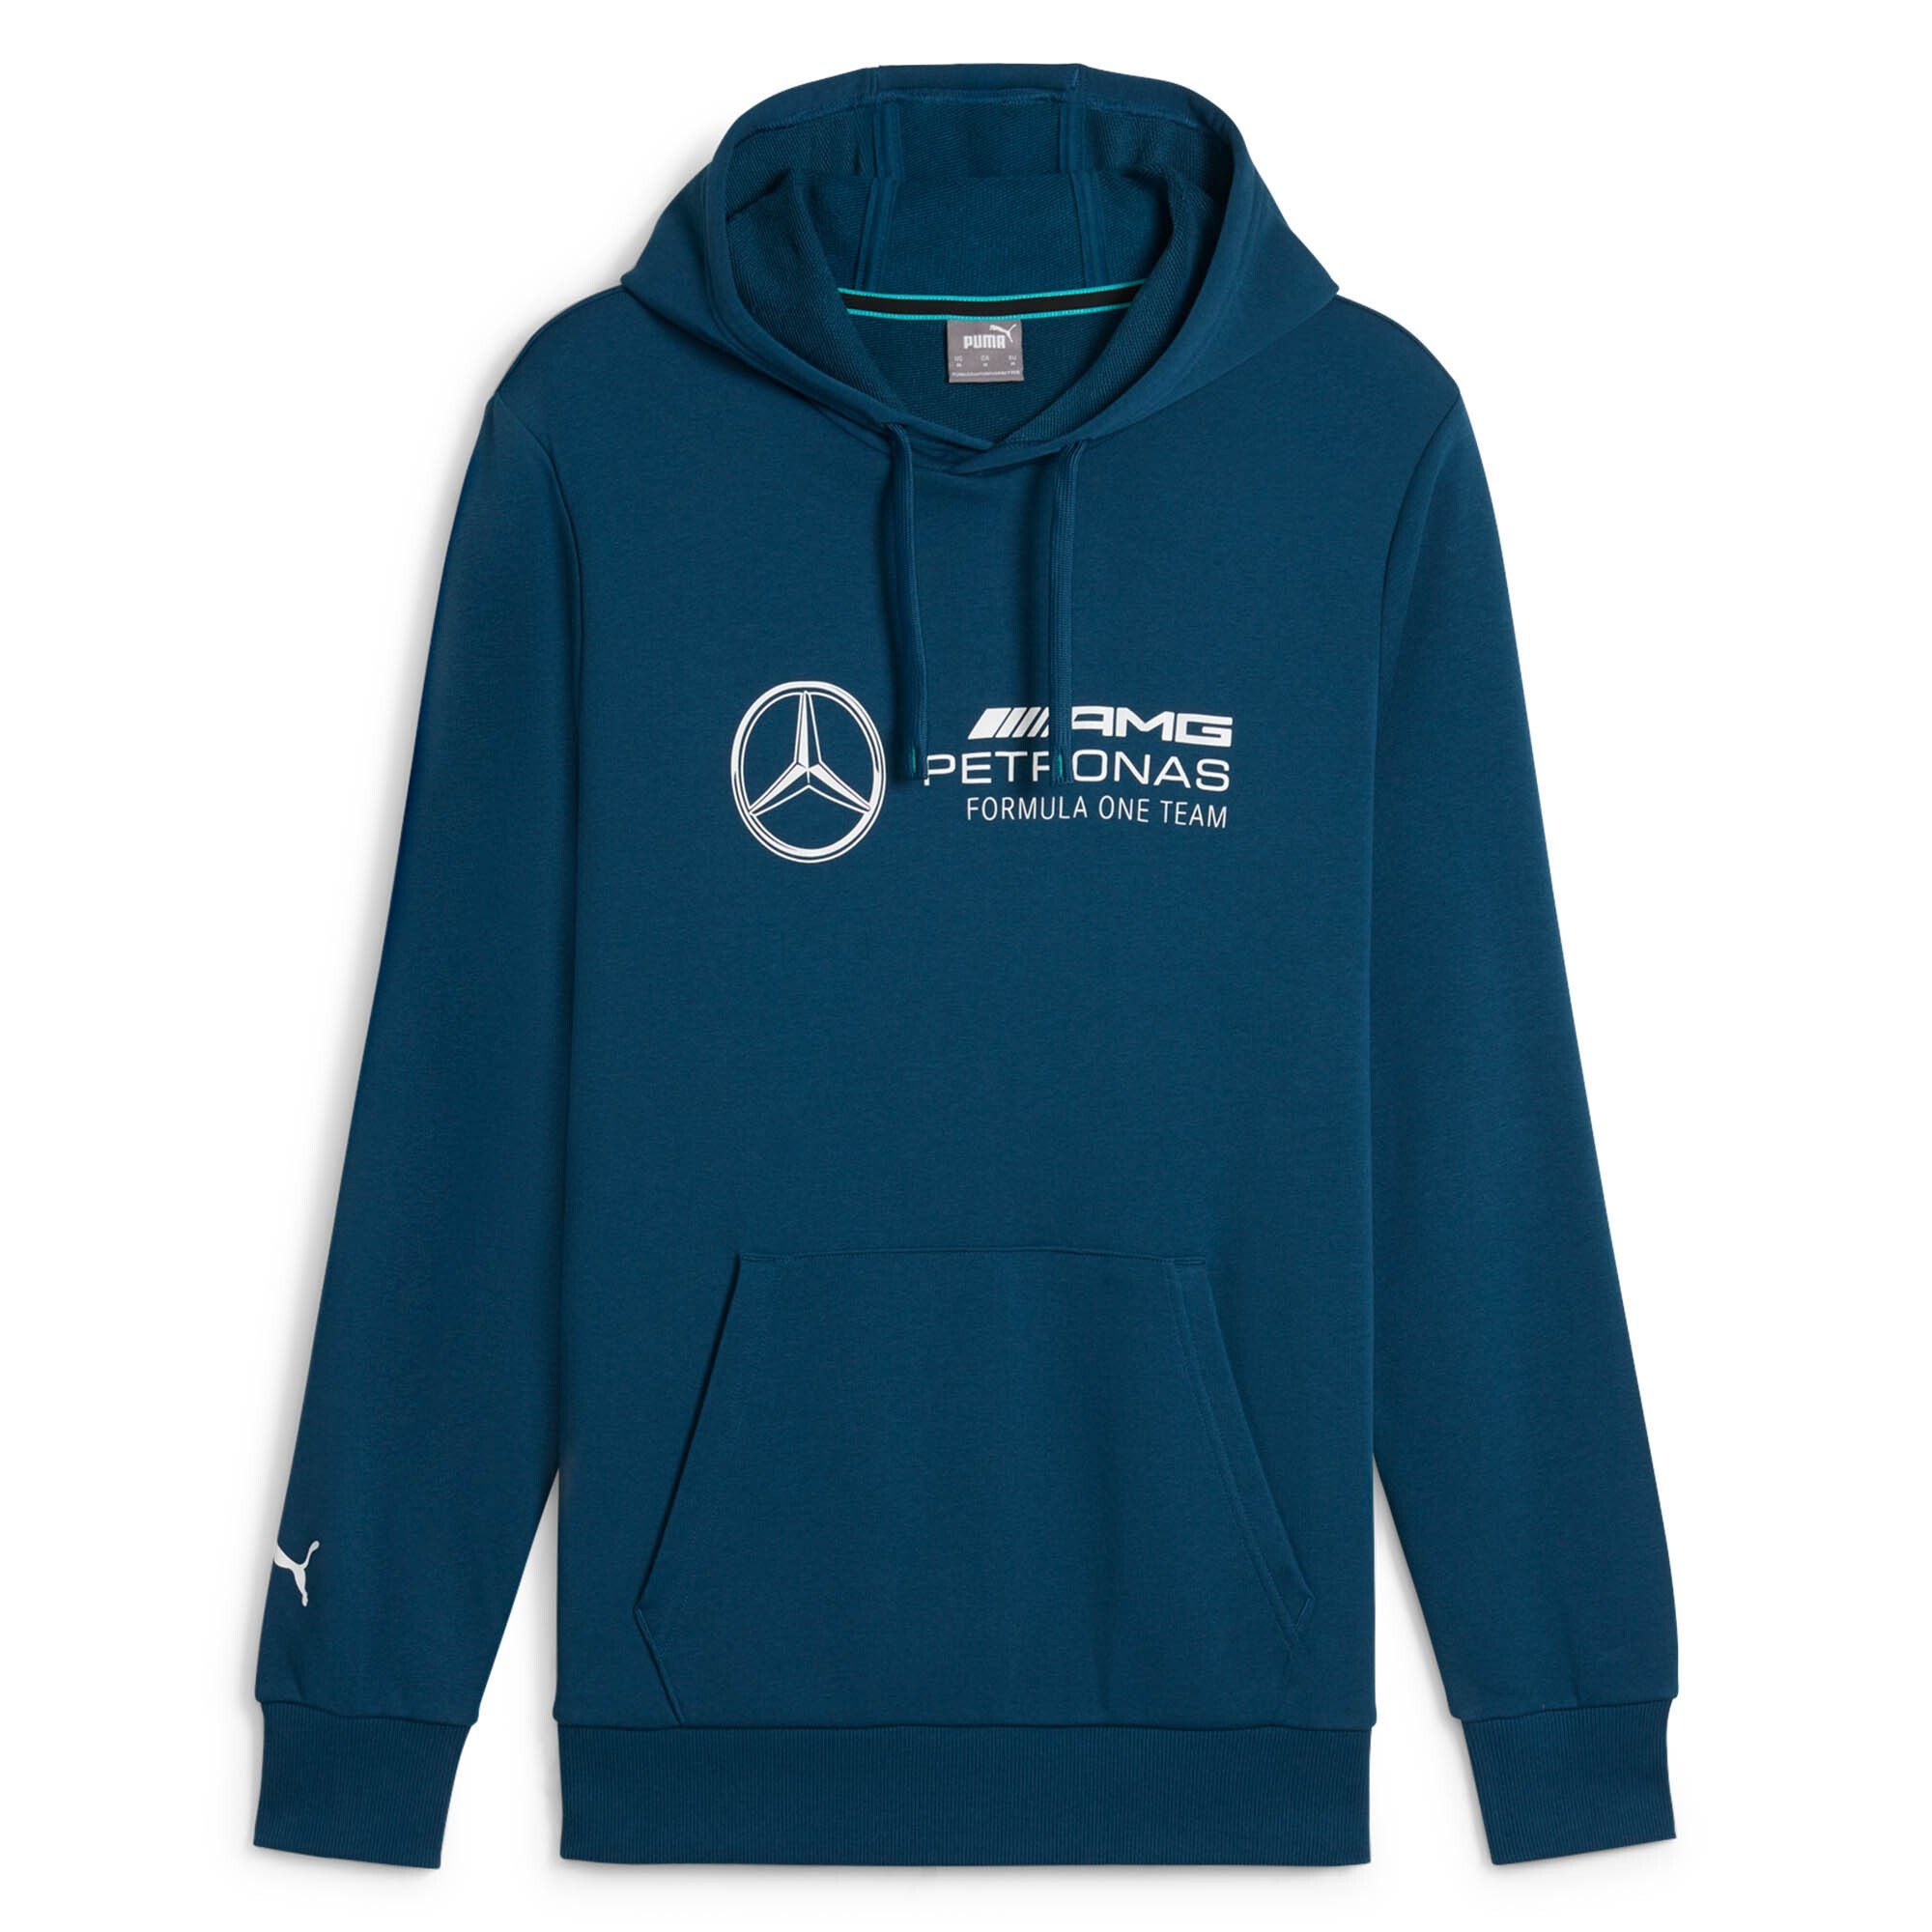 PUMA Sweatshirt Herren Hoodie - Motorsport MAPF1 Mercedes